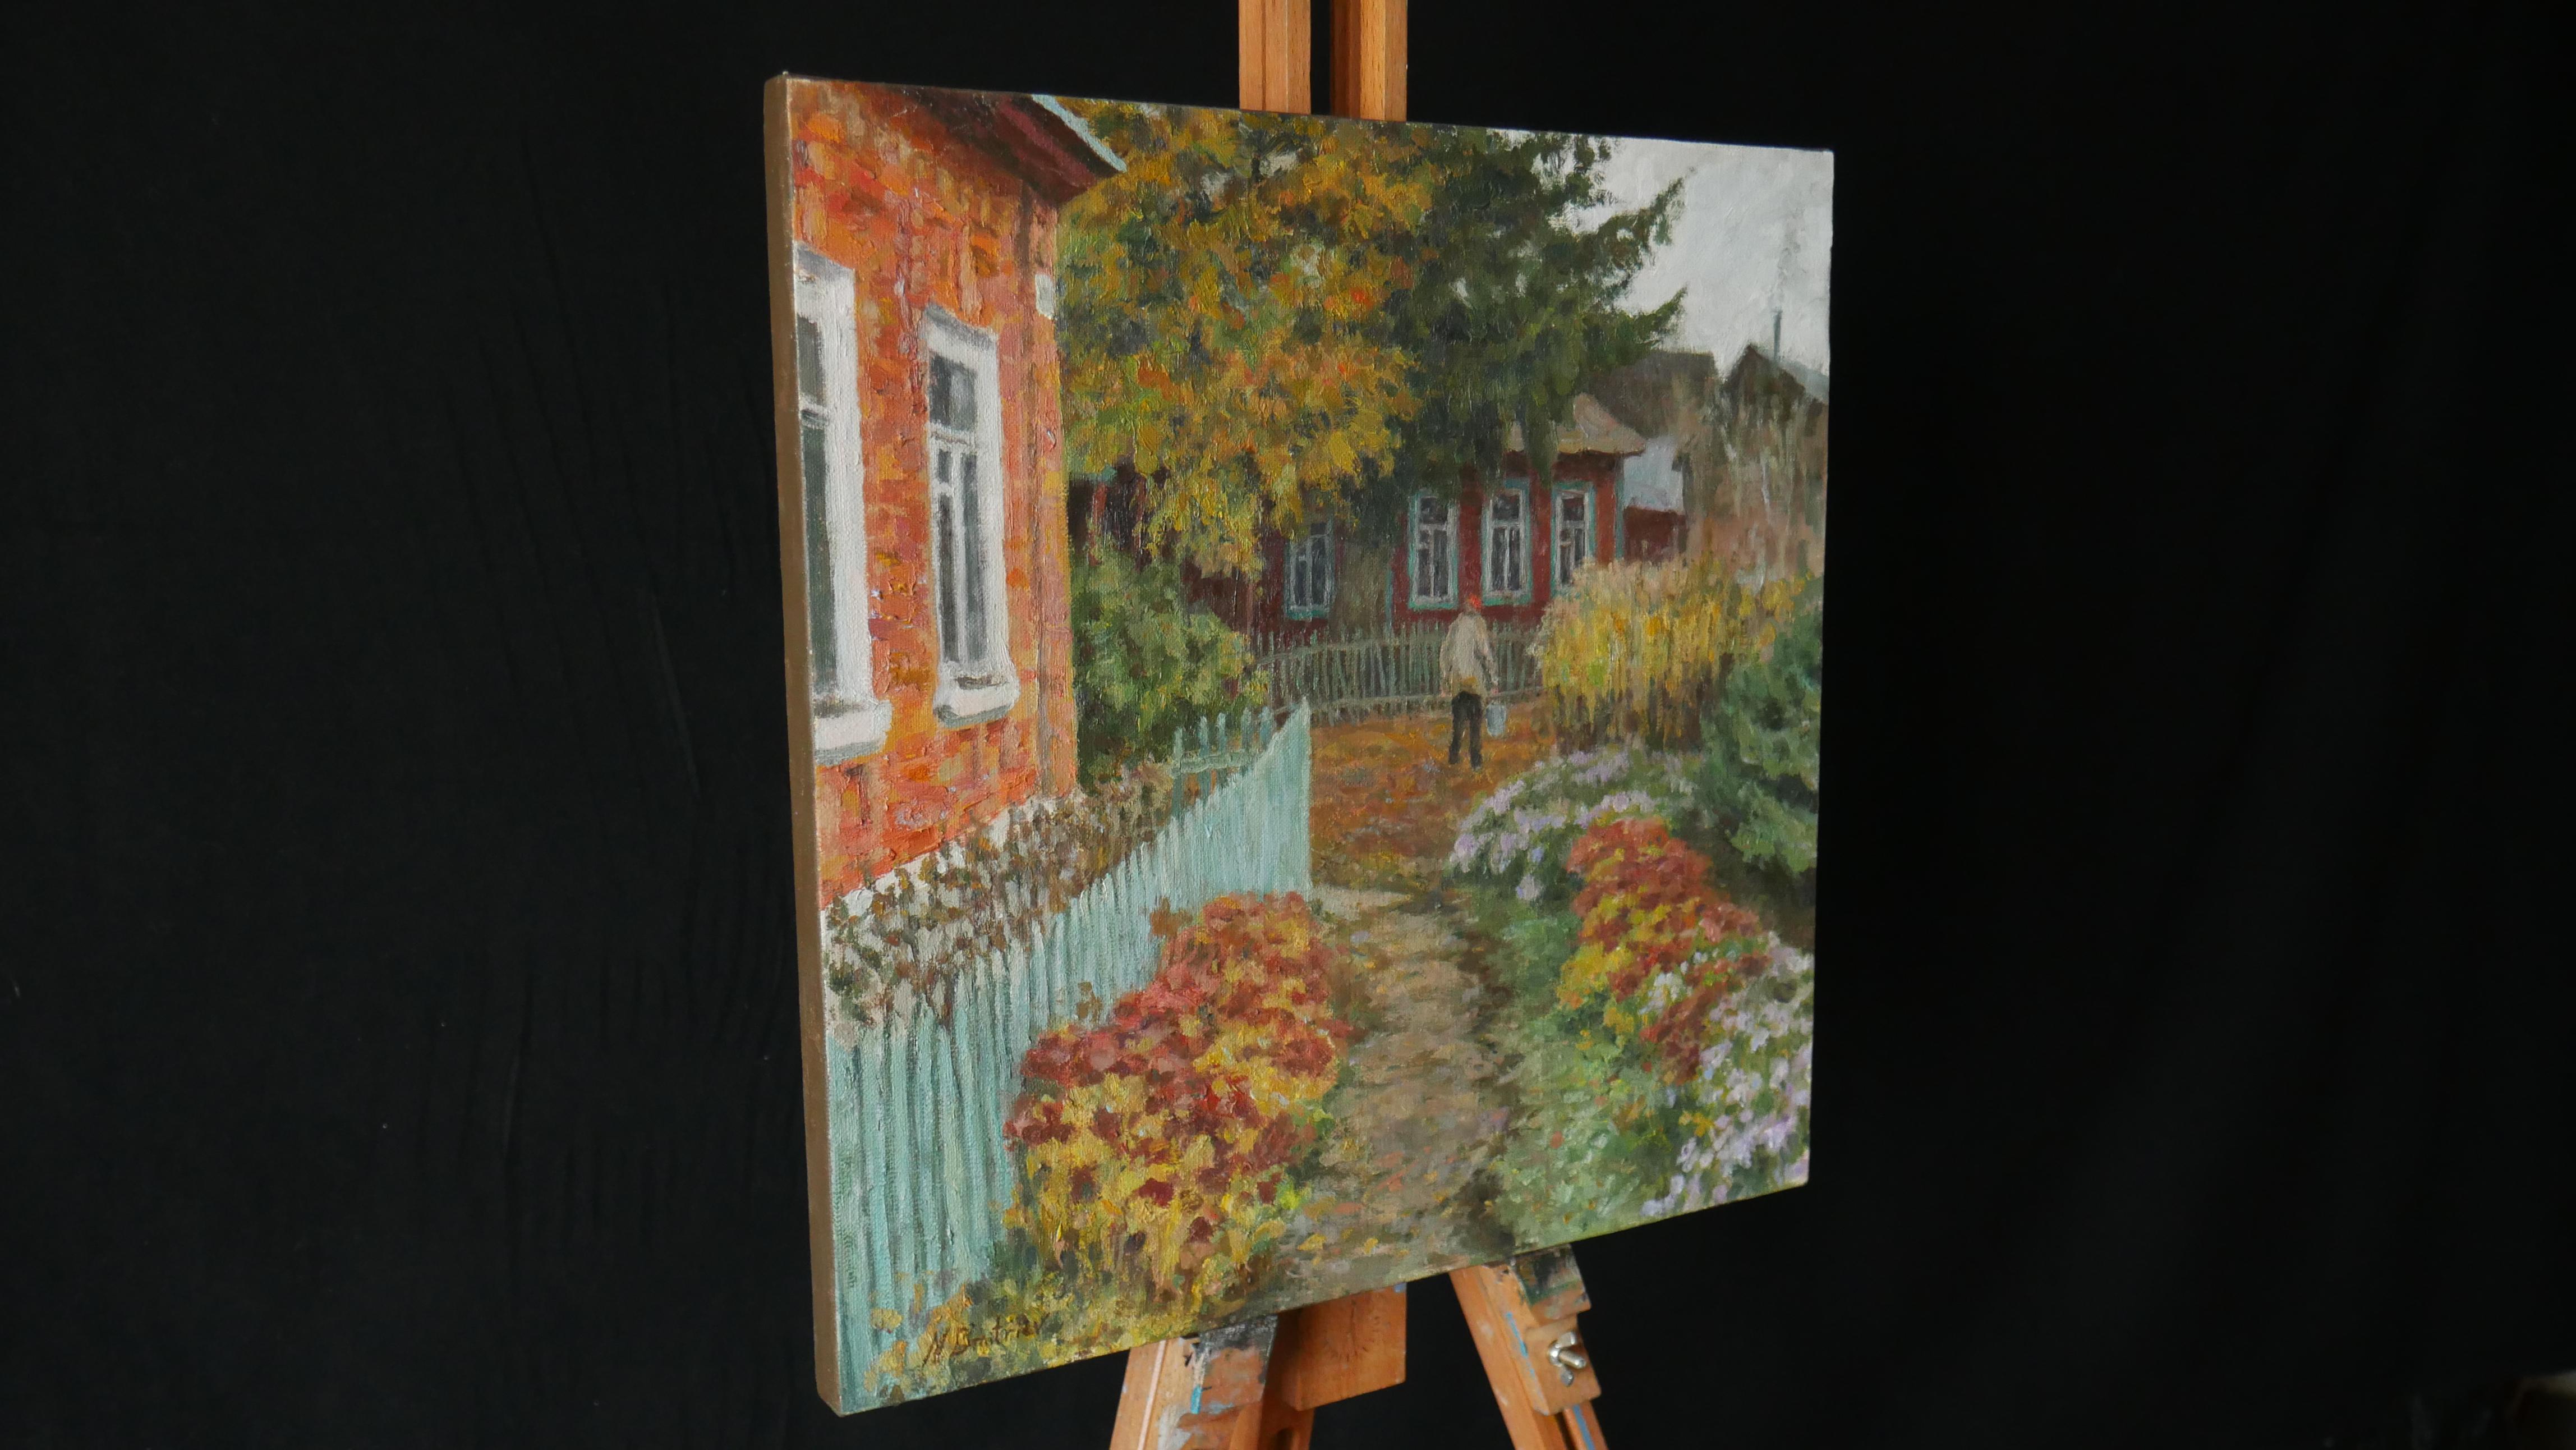 The Autumn Yard - Herbst-Landschaftsgemälde (Impressionismus), Painting, von Nikolay Dmitriev